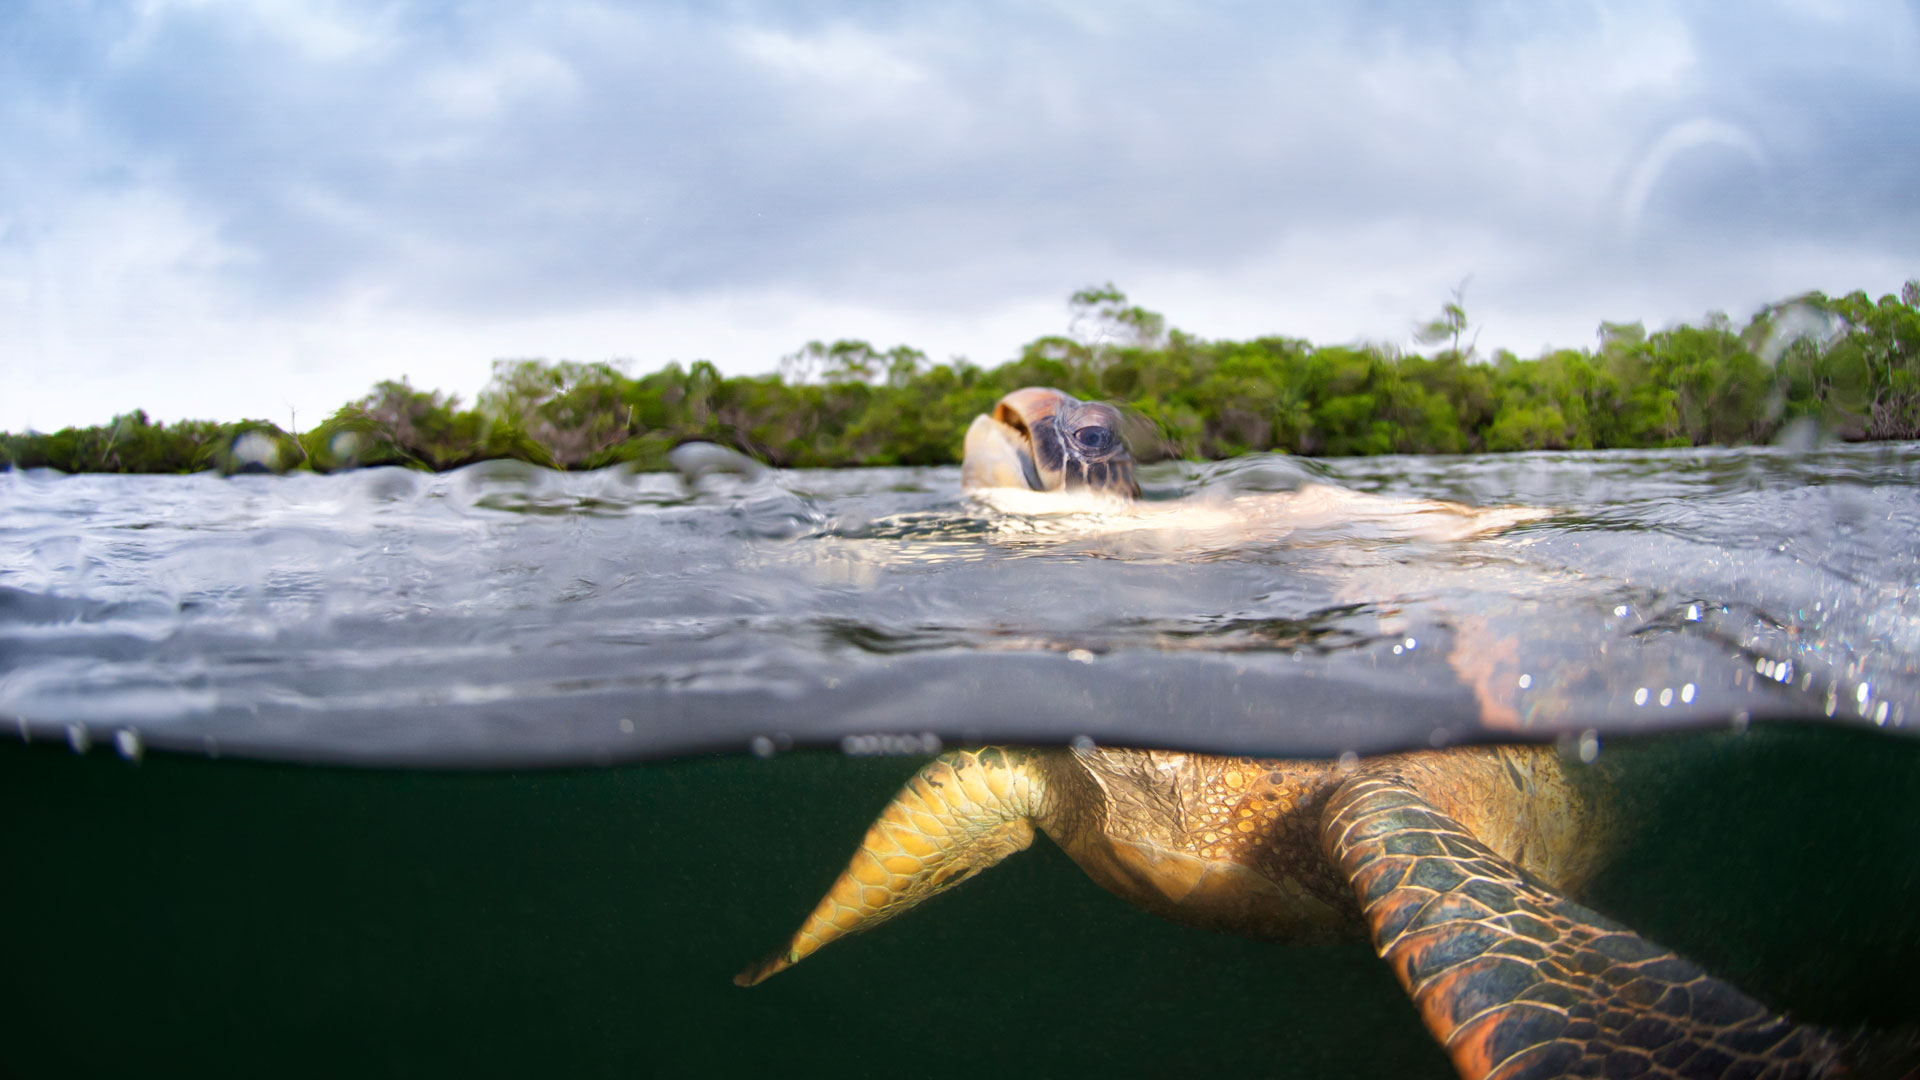 Meerschildkröte taucht auf. Wie atmen und schlafen Meeresschildkröten? 15 Fakten über die Schildkröten!